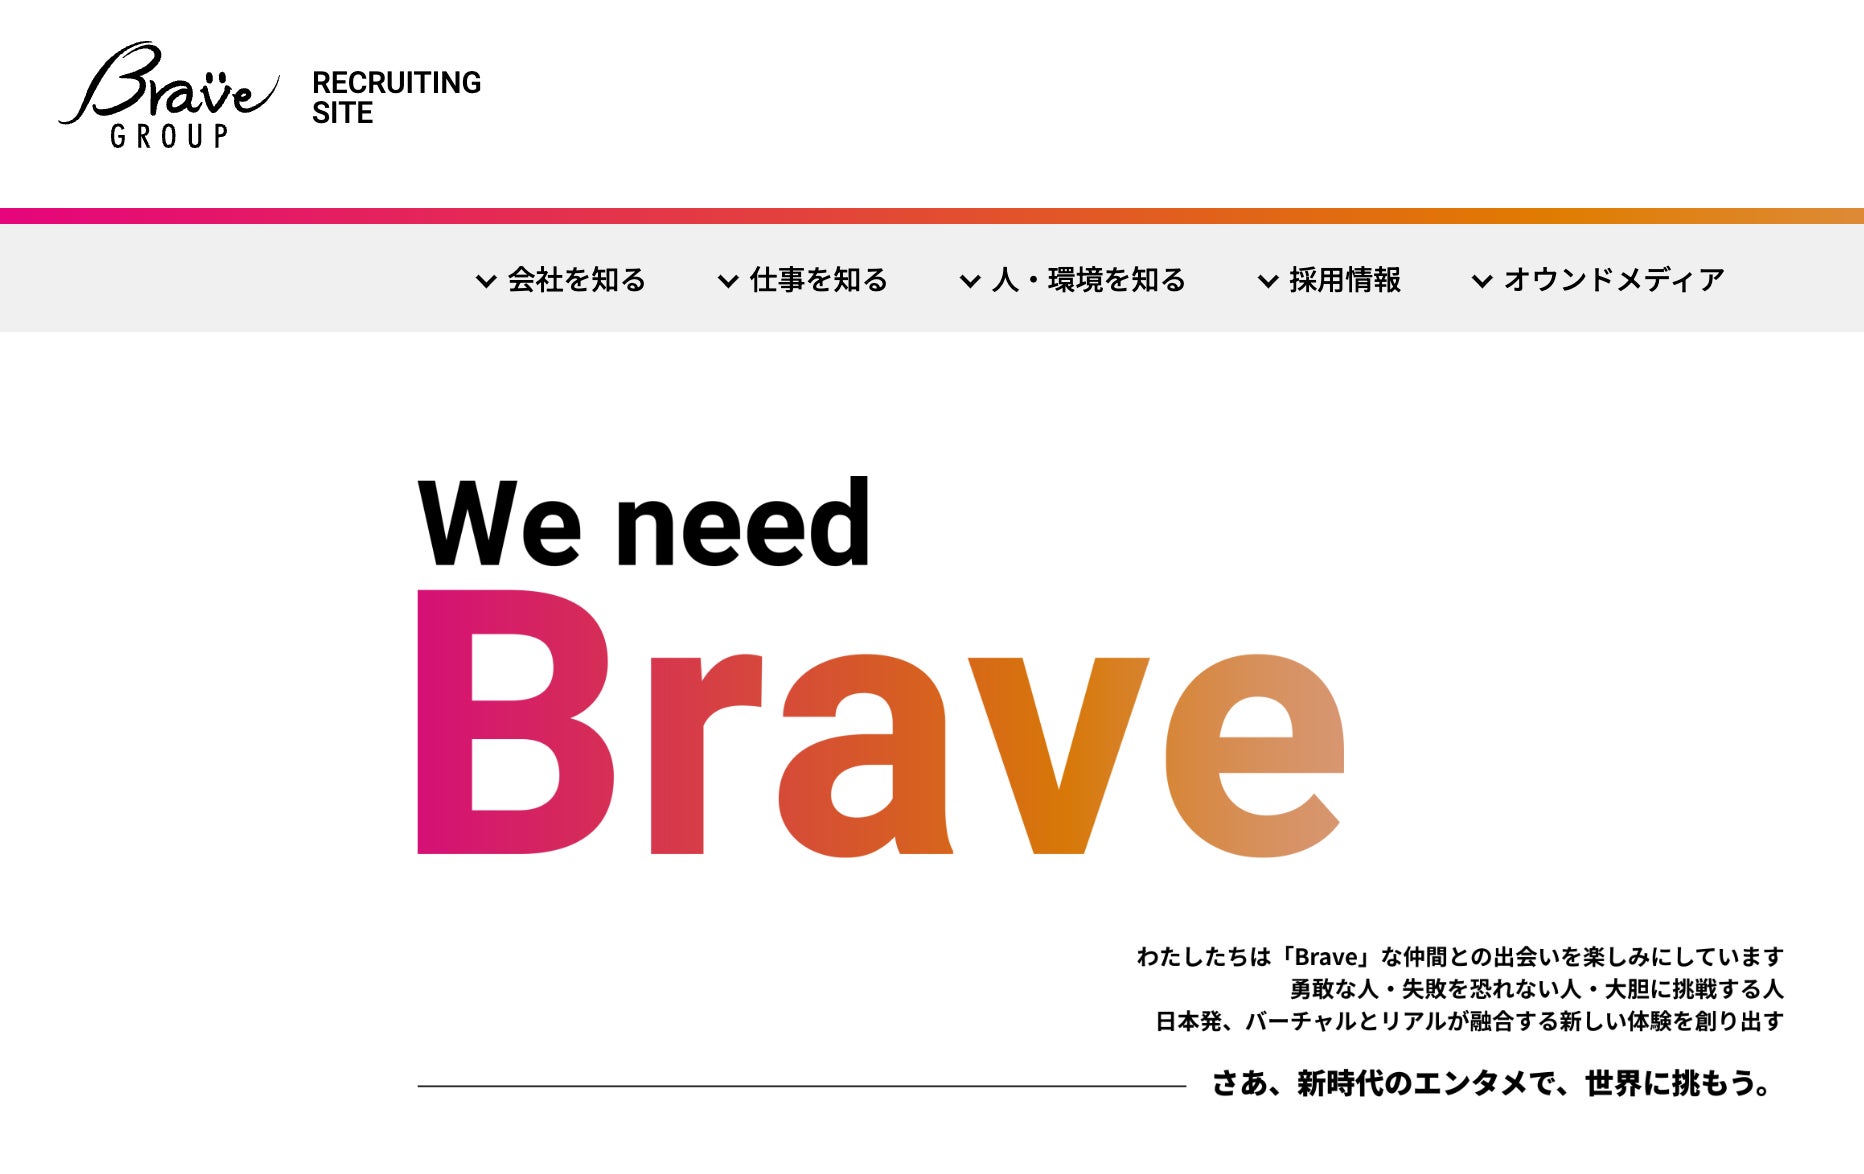 Brave group、事業と組織の拡大に向けて採用強化！採用サイトをオープンのサブ画像1